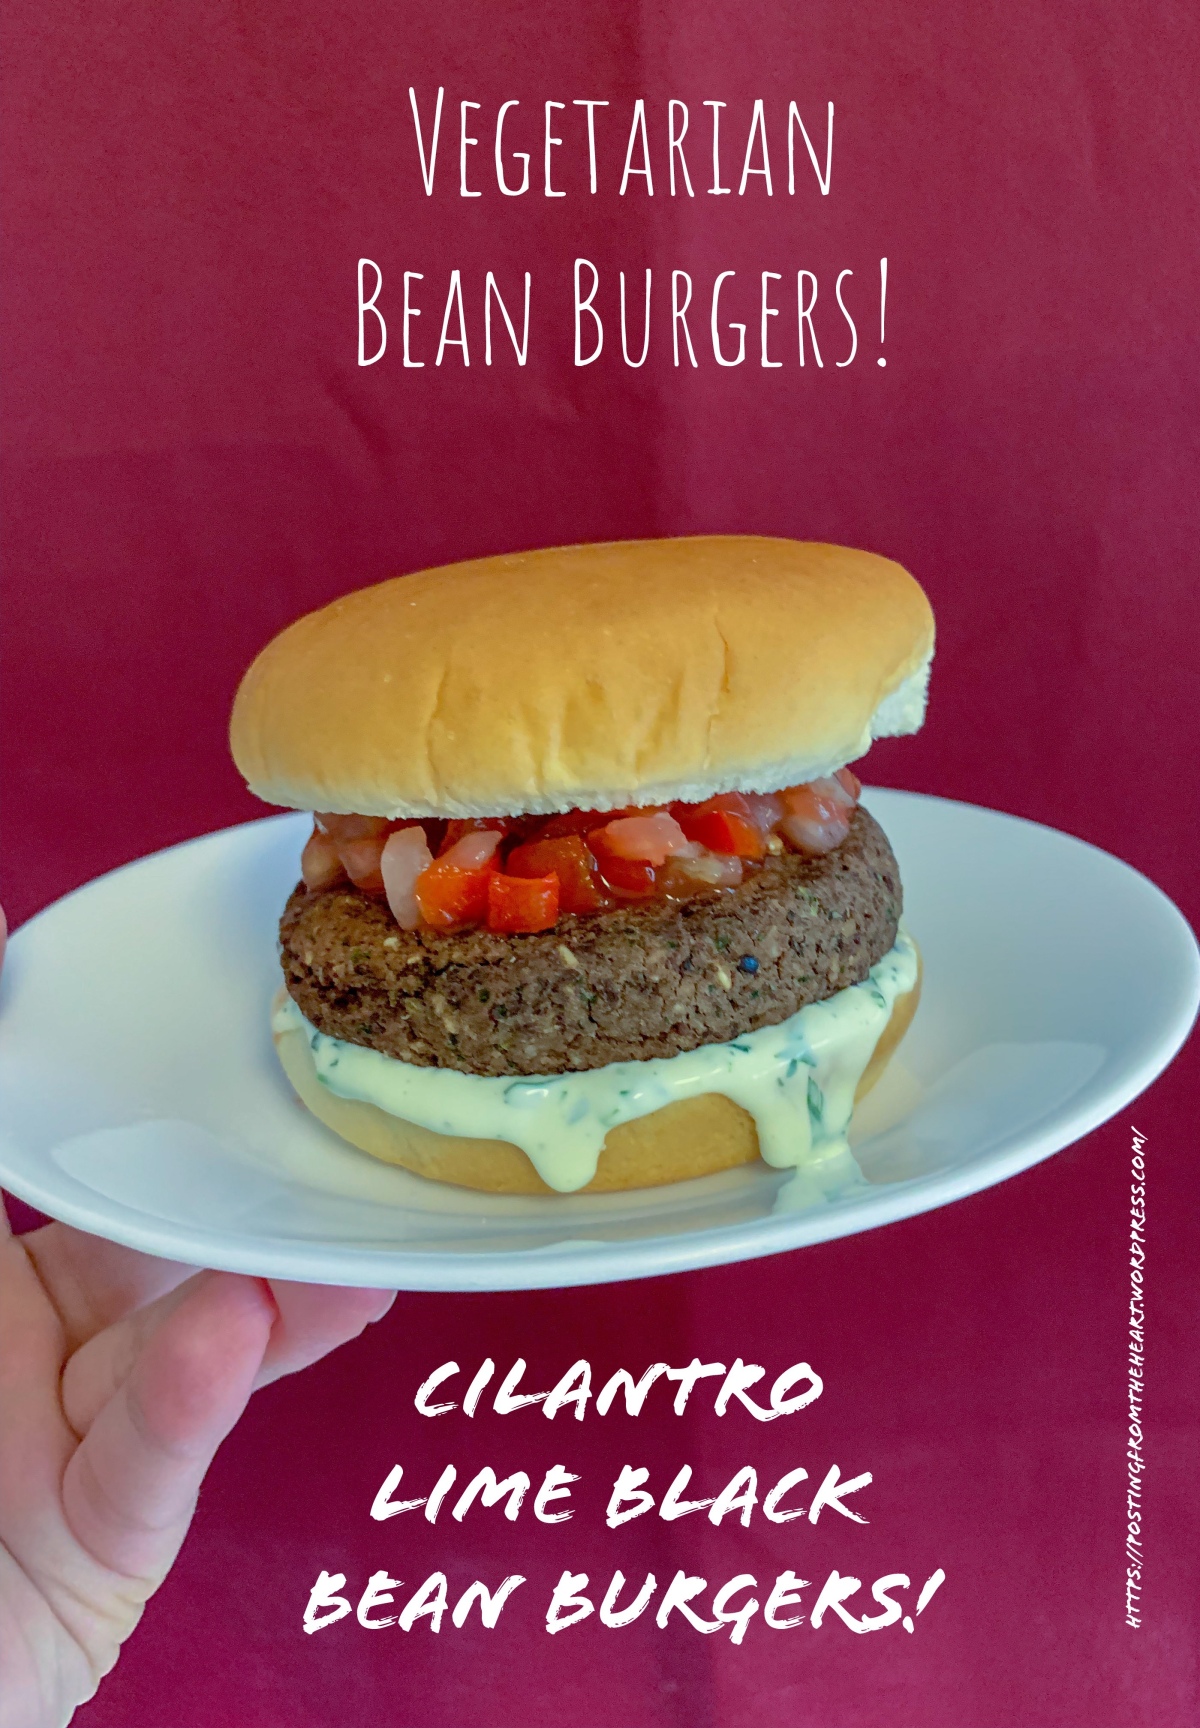 Vegetarian Bean Burgers: Cilantro Lime Black Bean Burgers!